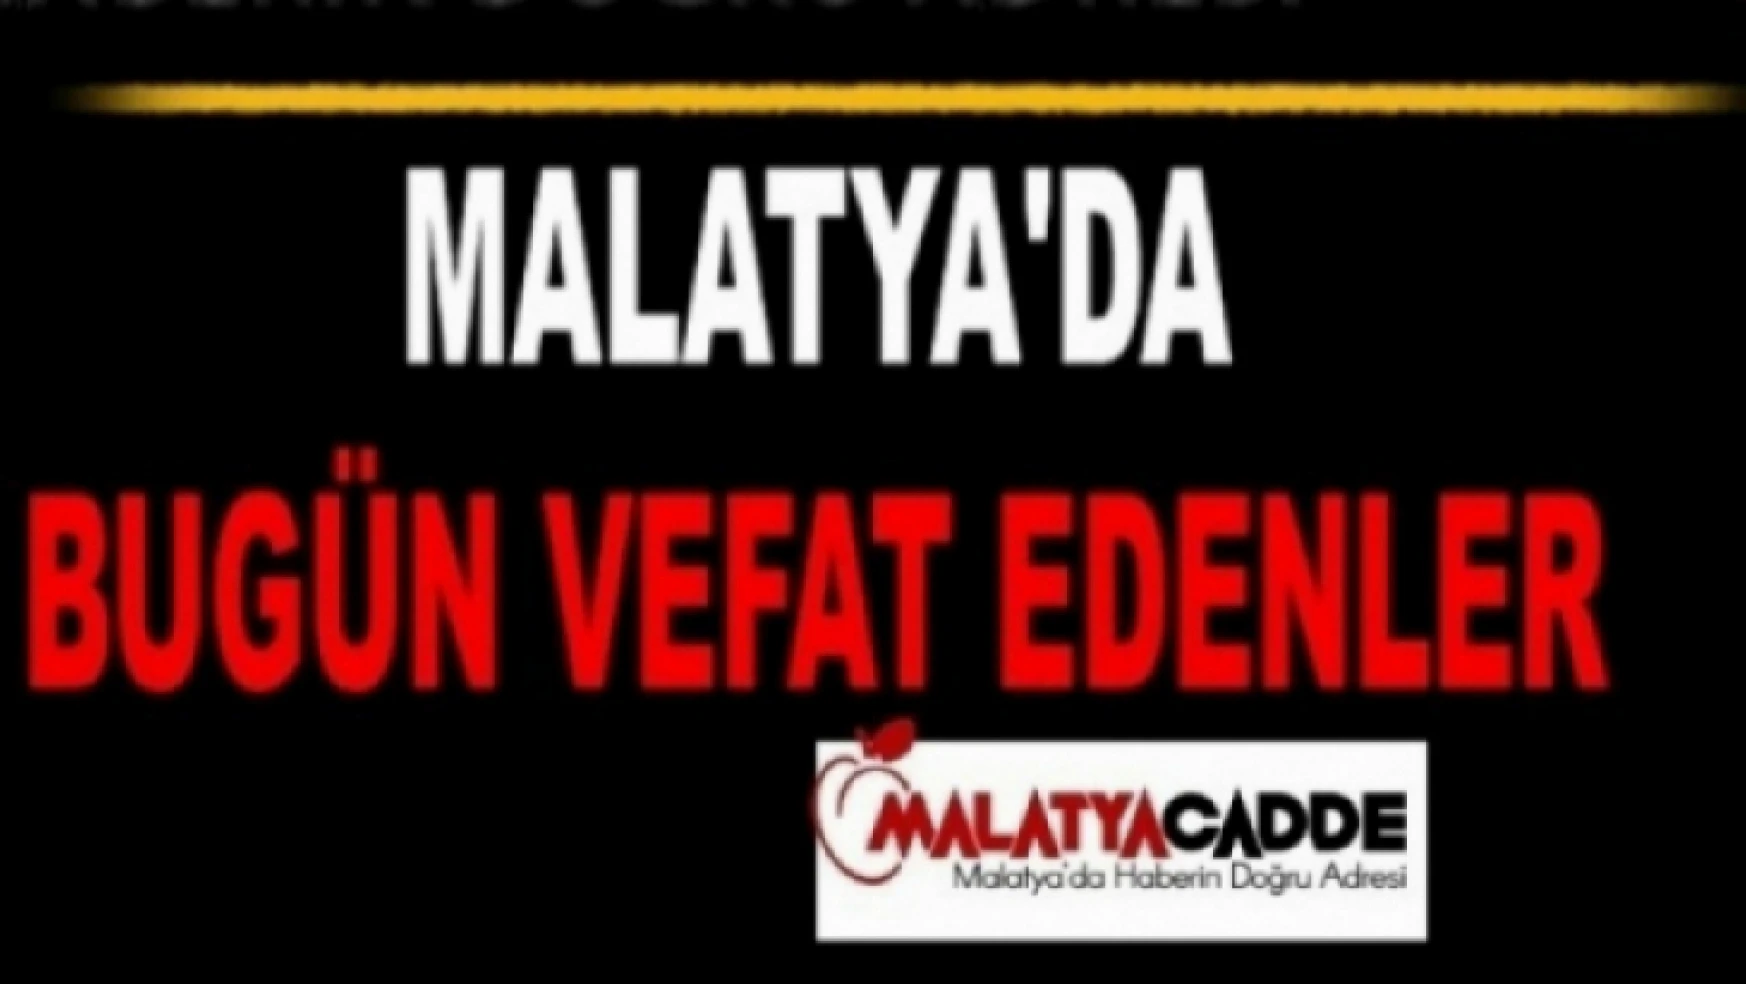 Malatya'da 7 kişi vefat etti